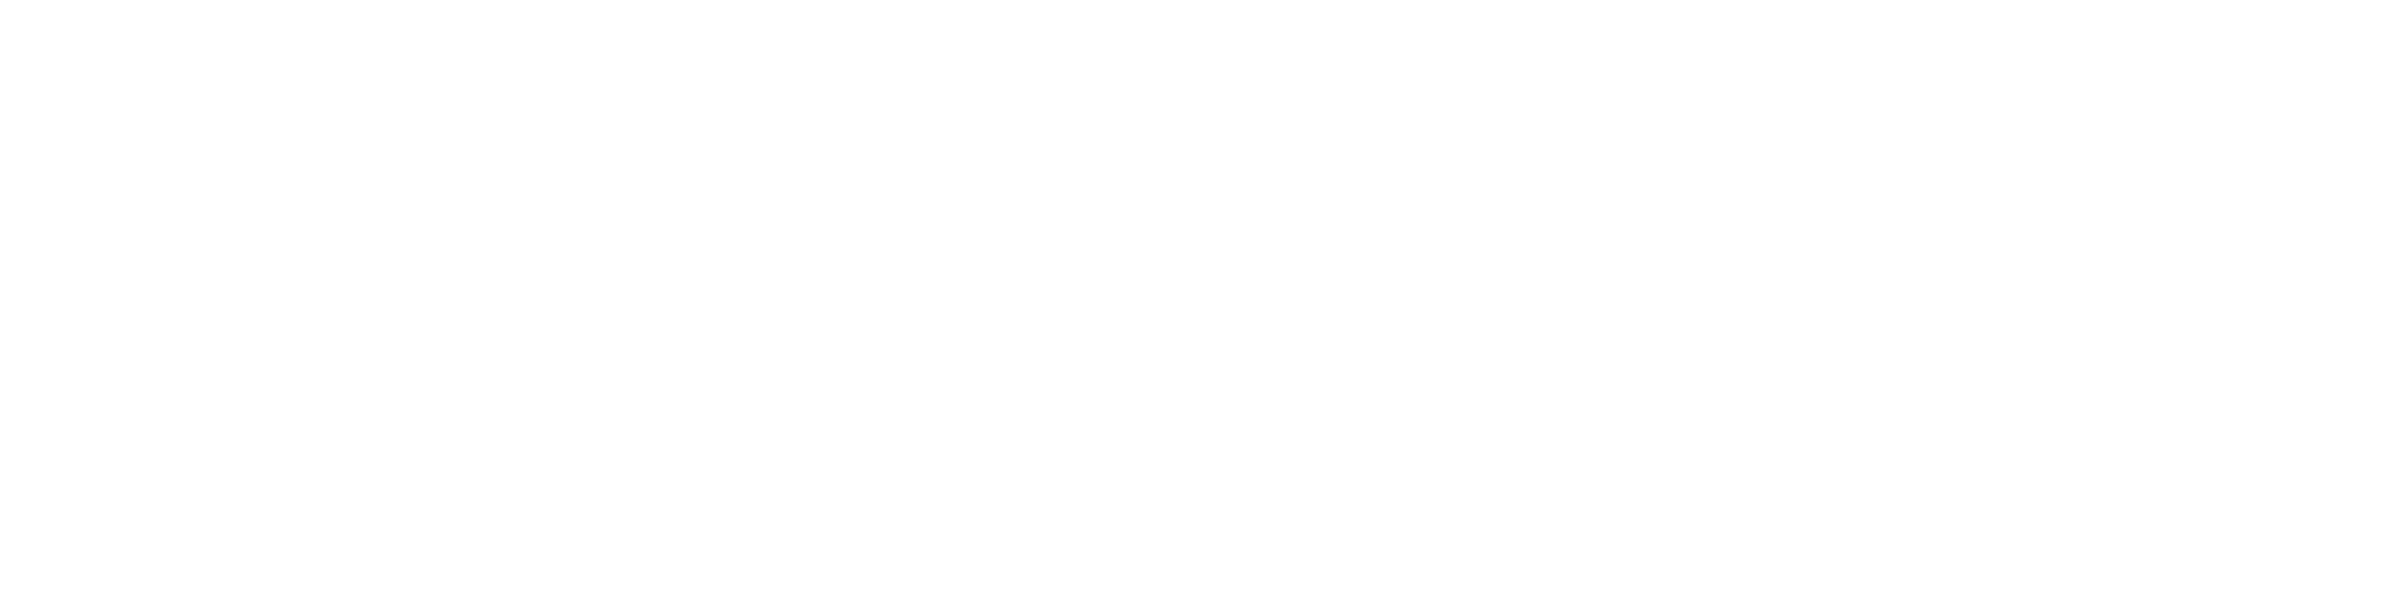 龗（おかみ）カードセット・サイコロ – 草場一壽工房 Museum Shop